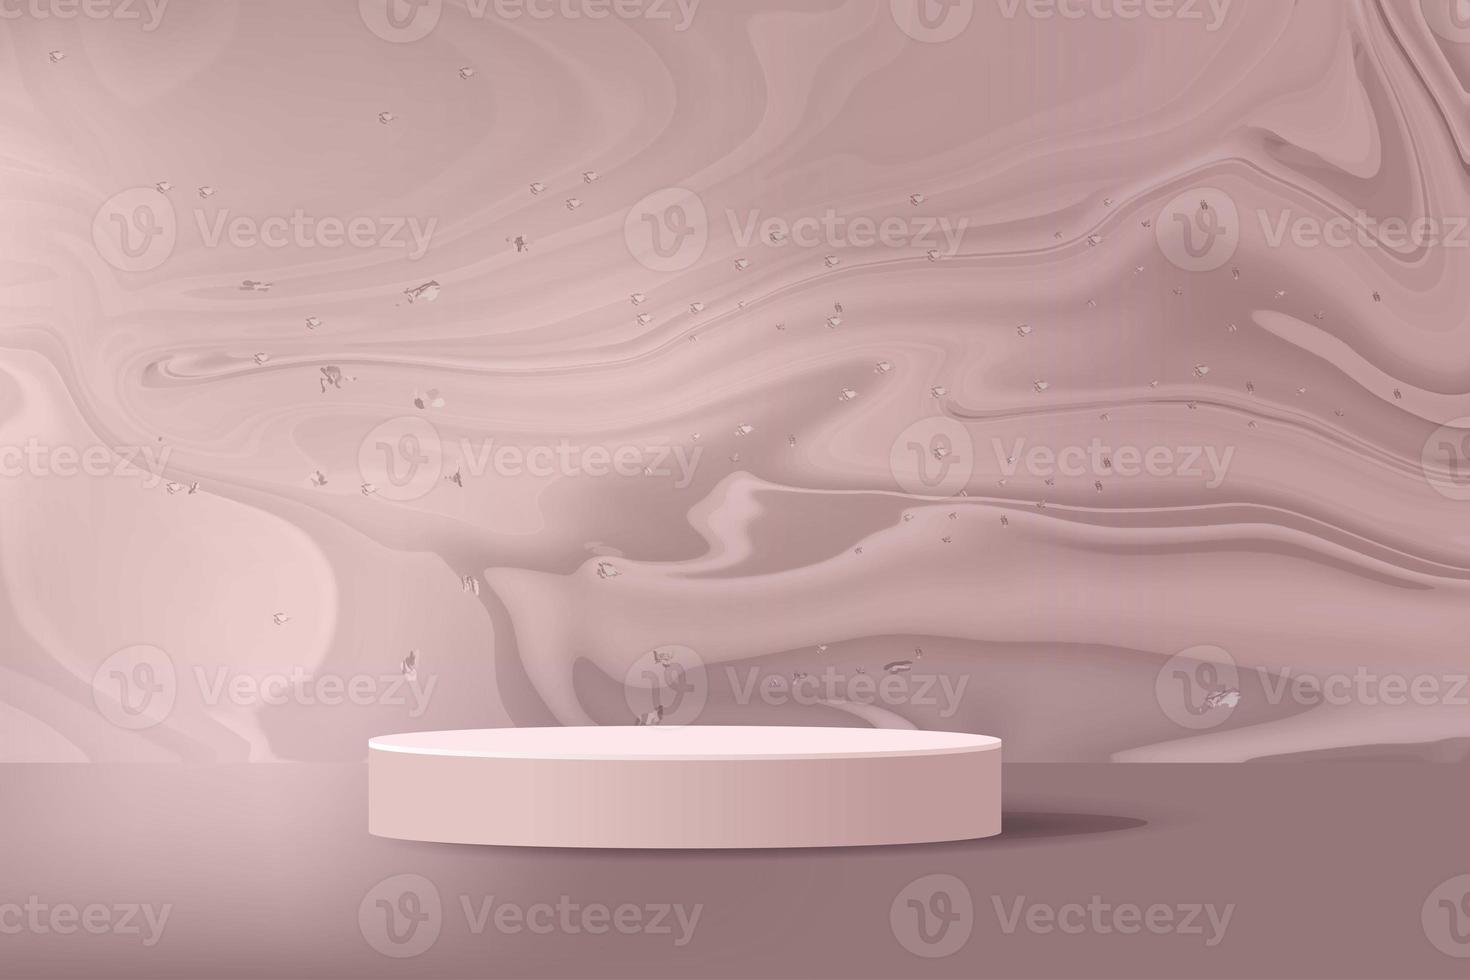 pódio cilíndrico na cor bege, cena realista, em sombras realistas de fundo de textura de mármore líquido castanho chocolate, ilustração vetorial de renderização 3d foto